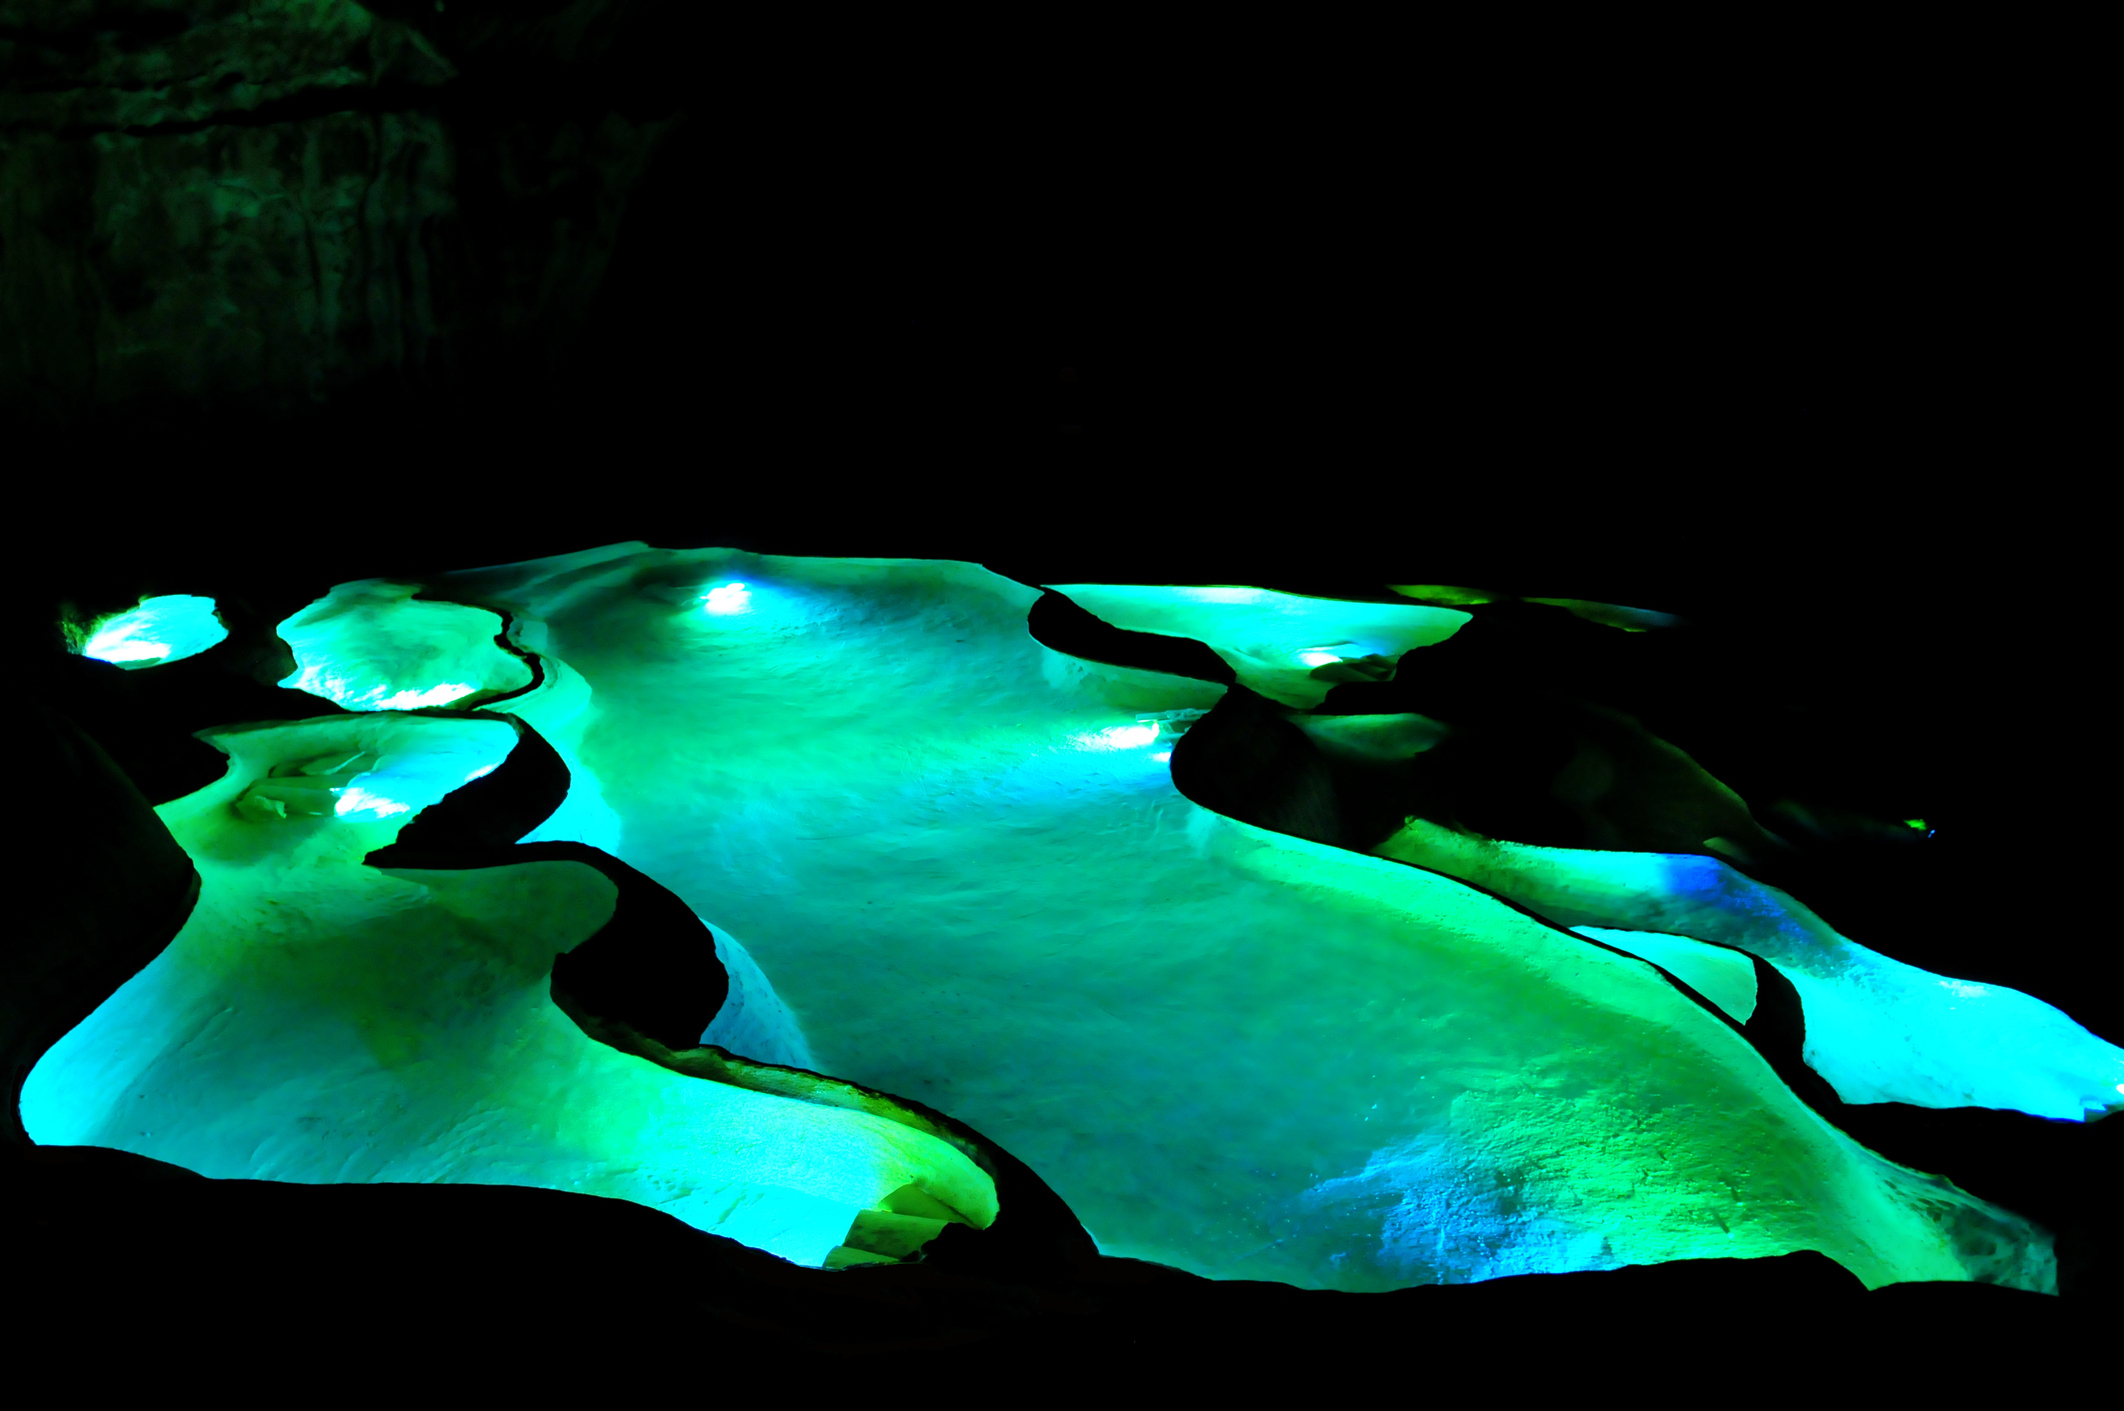 Die Struktur der Höhle verfügt über wunderschöne beleuchtete Becken, die heute bei Touristen beliebt sind